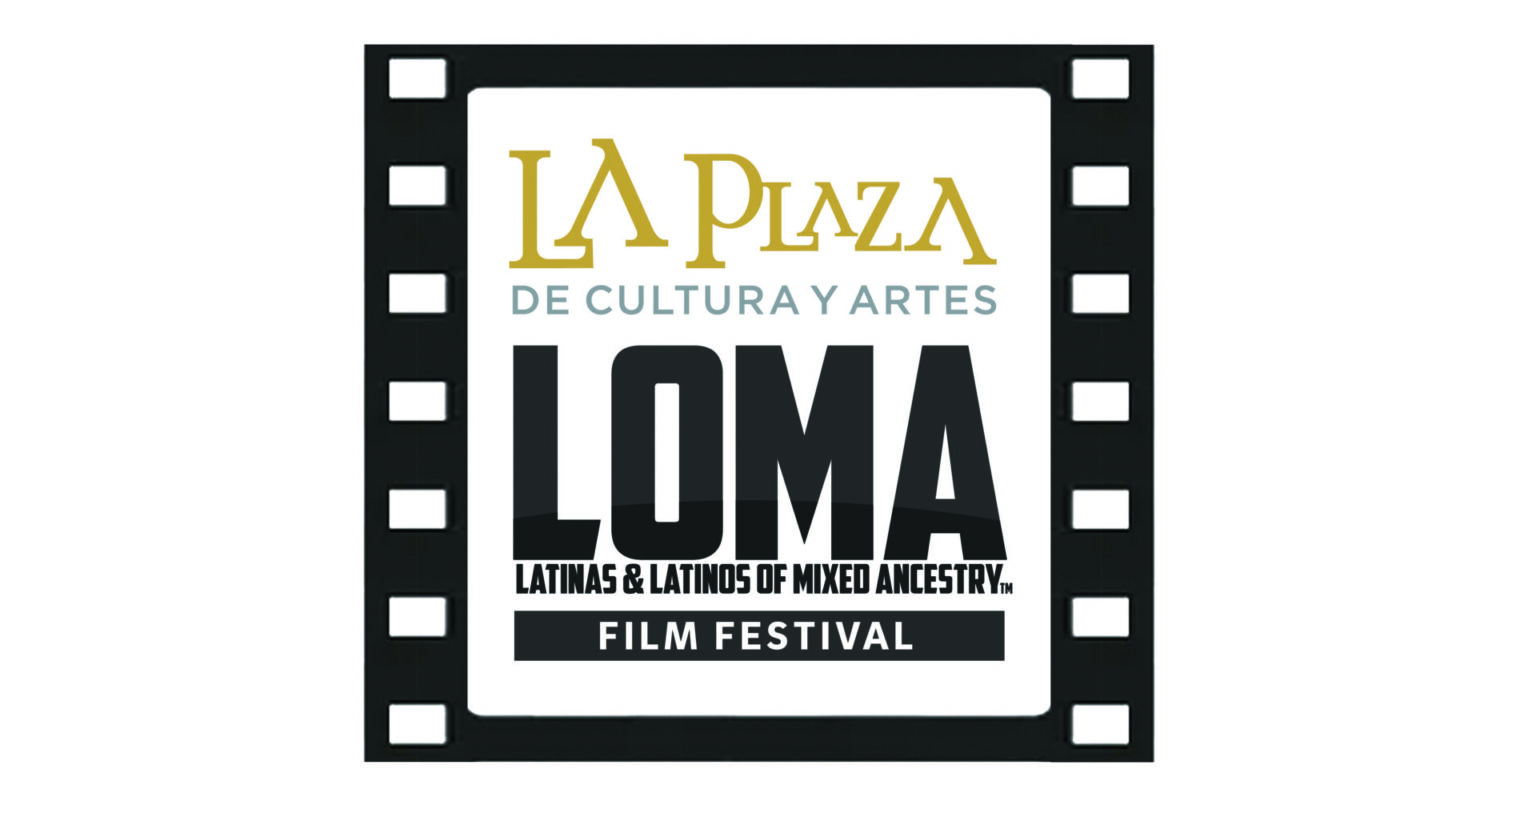 LOMA Film Festival at La Plaza!